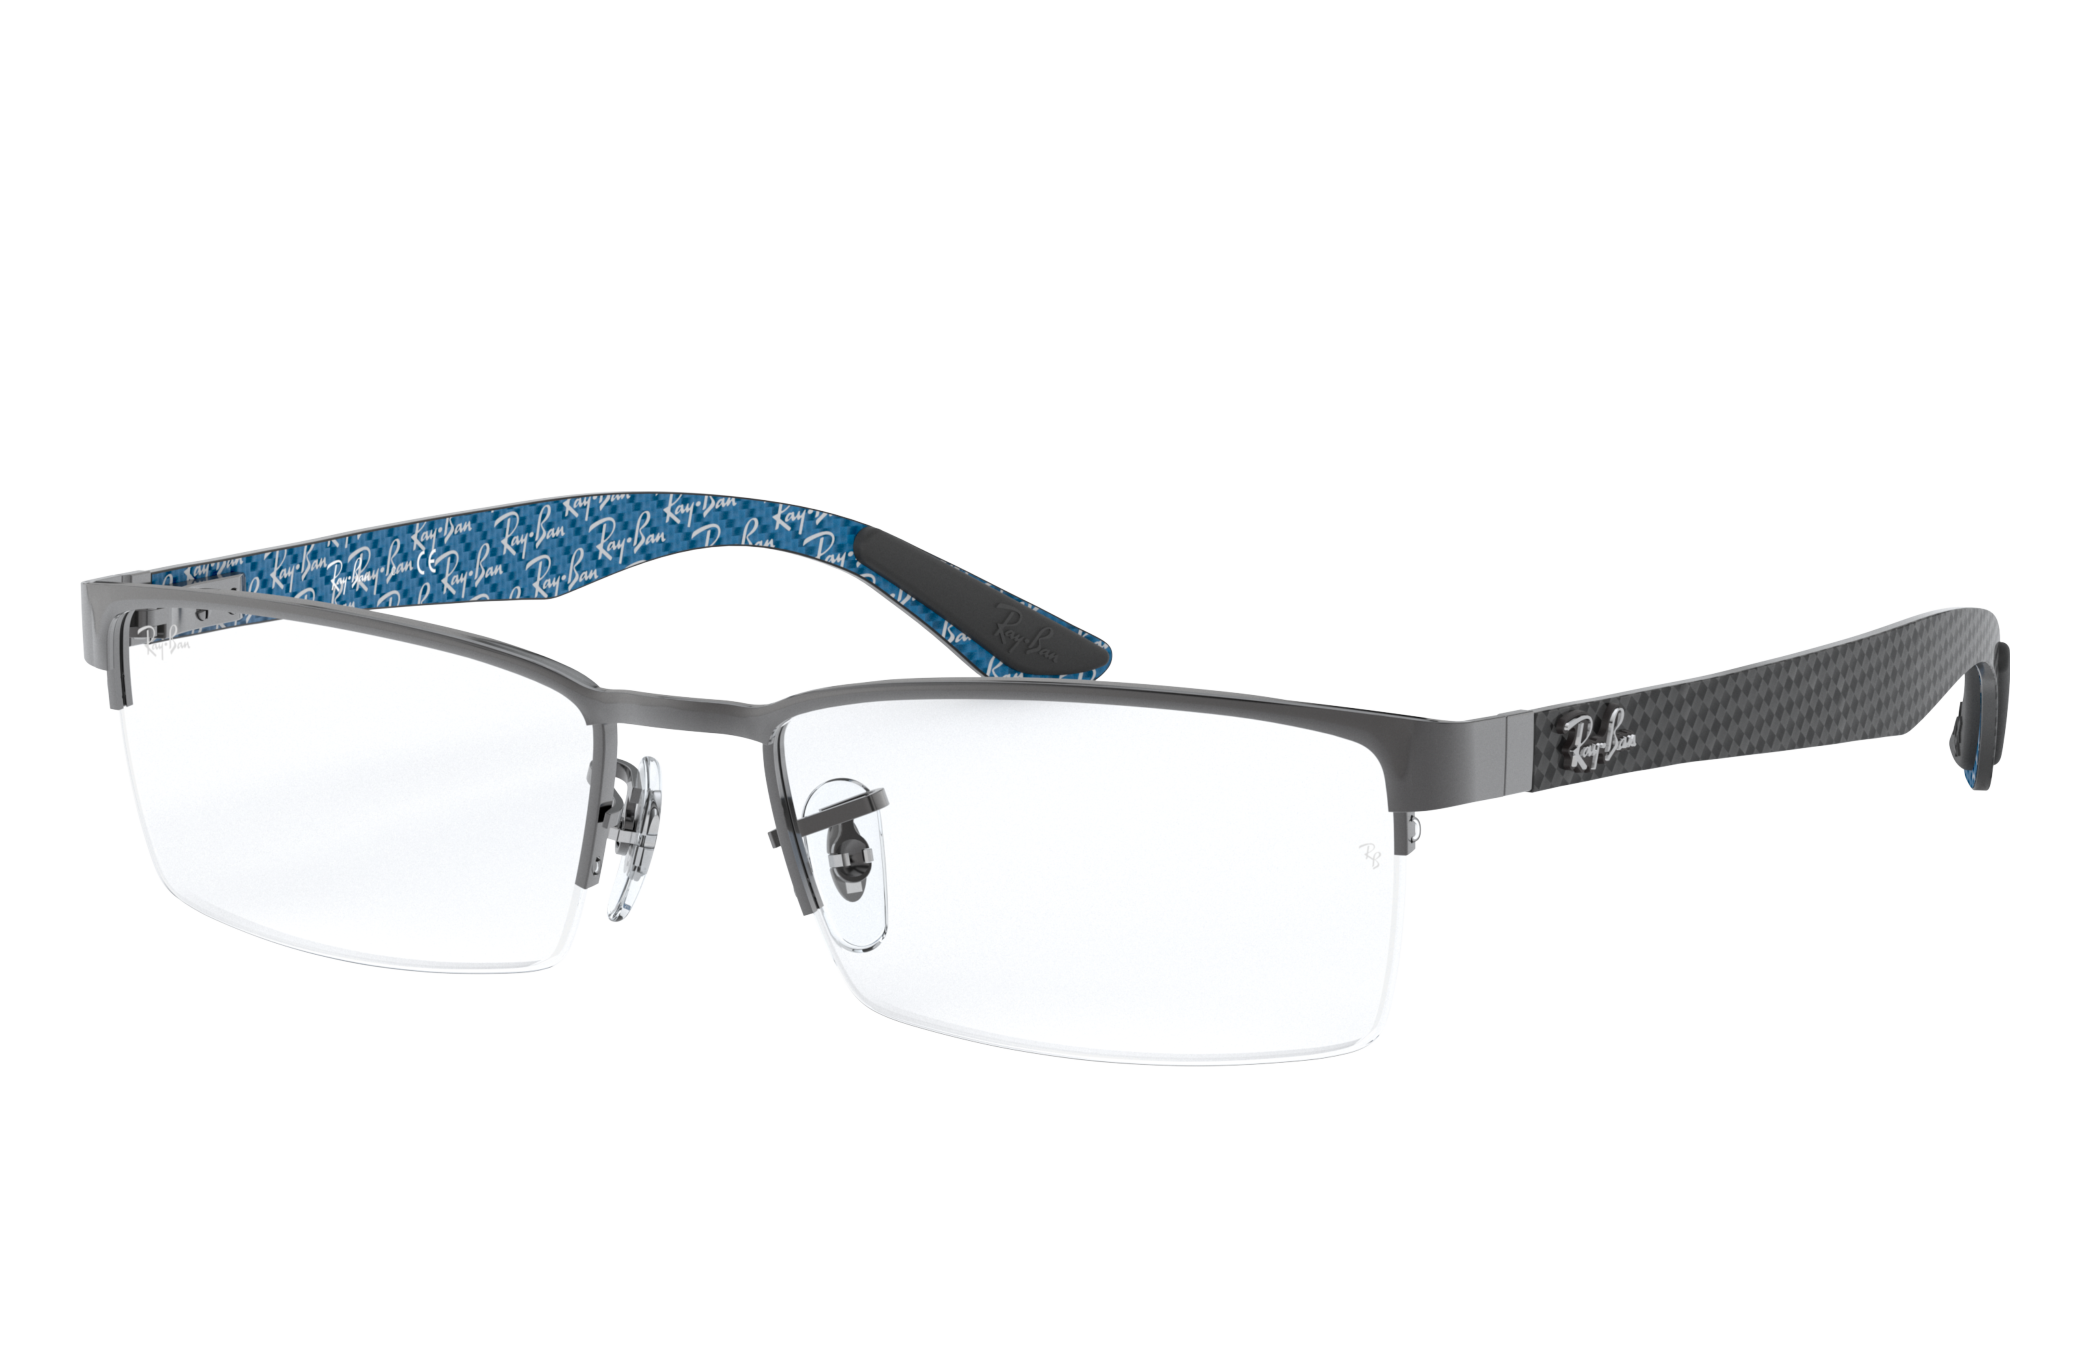 Rb8412 Optics Eyeglasses With Gunmetal Frame Rb8412 Ray Ban® Us